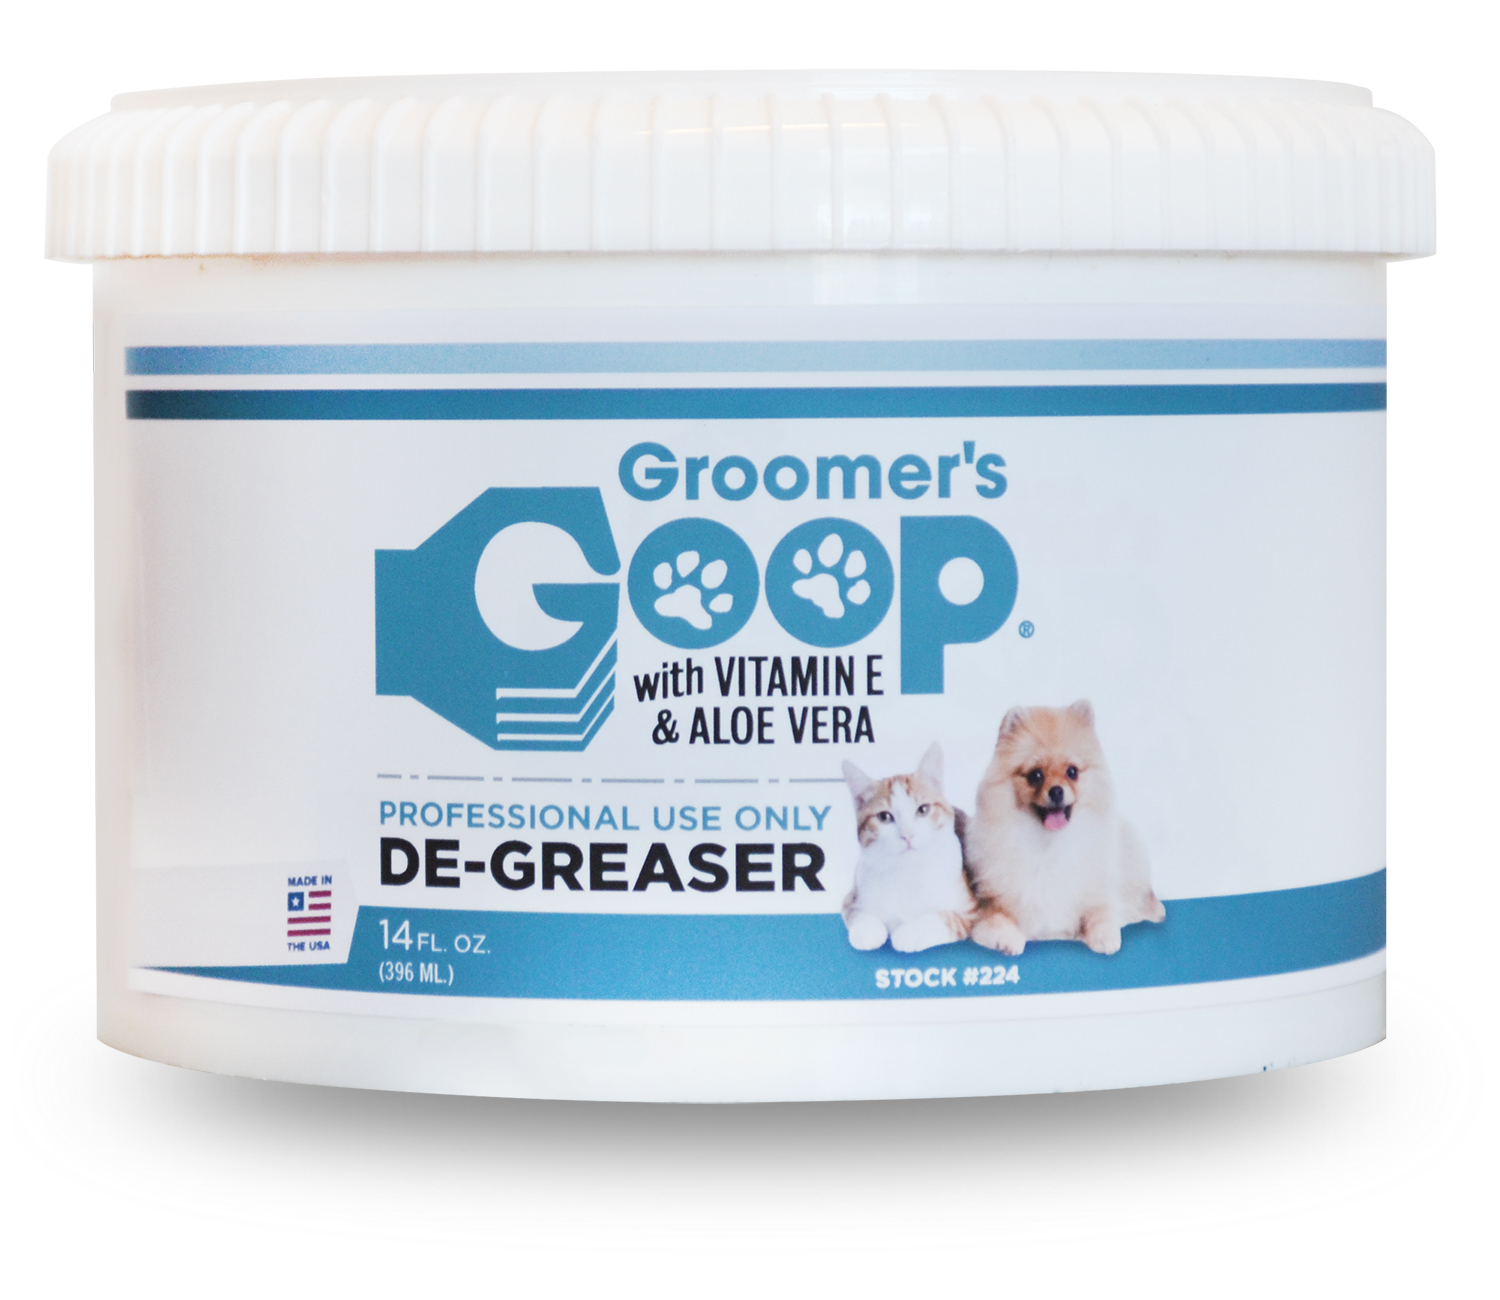 Moms-Goop-Groomers-224-DeGreaser14oz.jpg